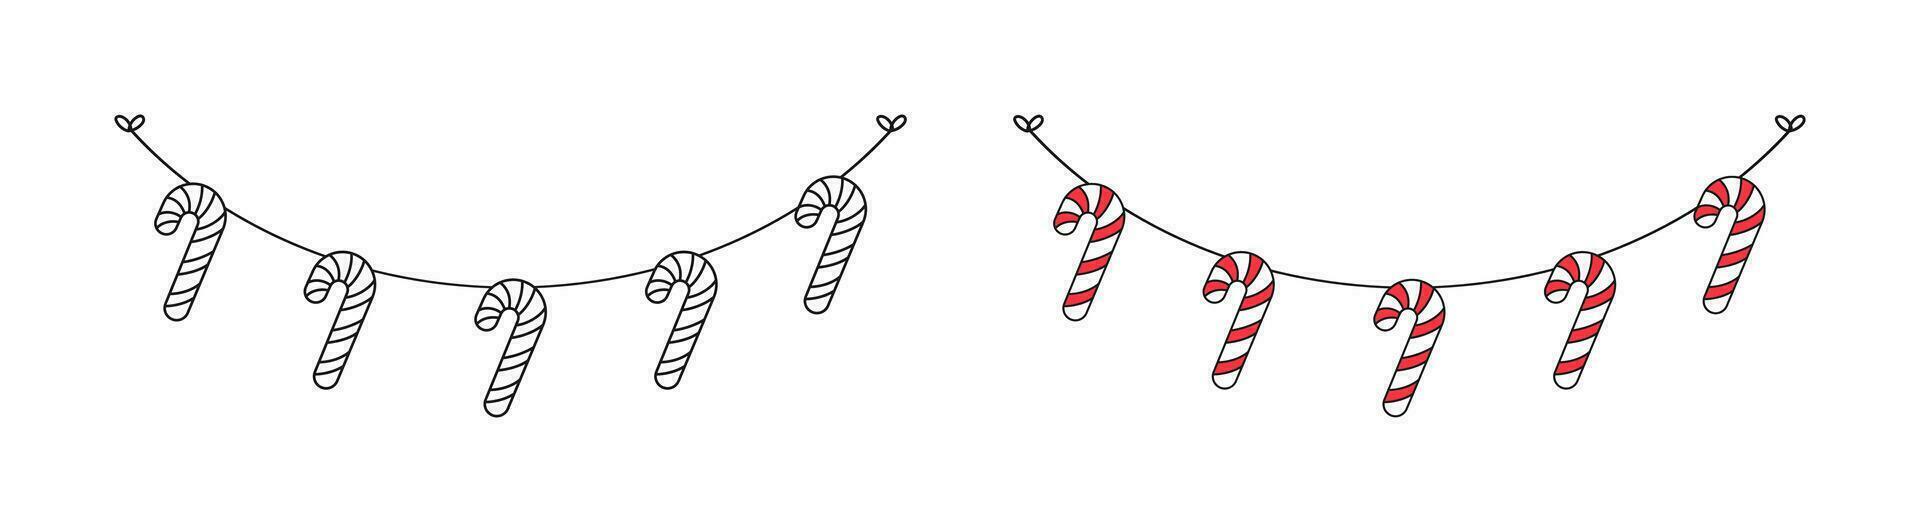 bonbons canne guirlande griffonnage ligne art ensemble vecteur illustration, Noël graphique de fête hiver vacances saison bruant